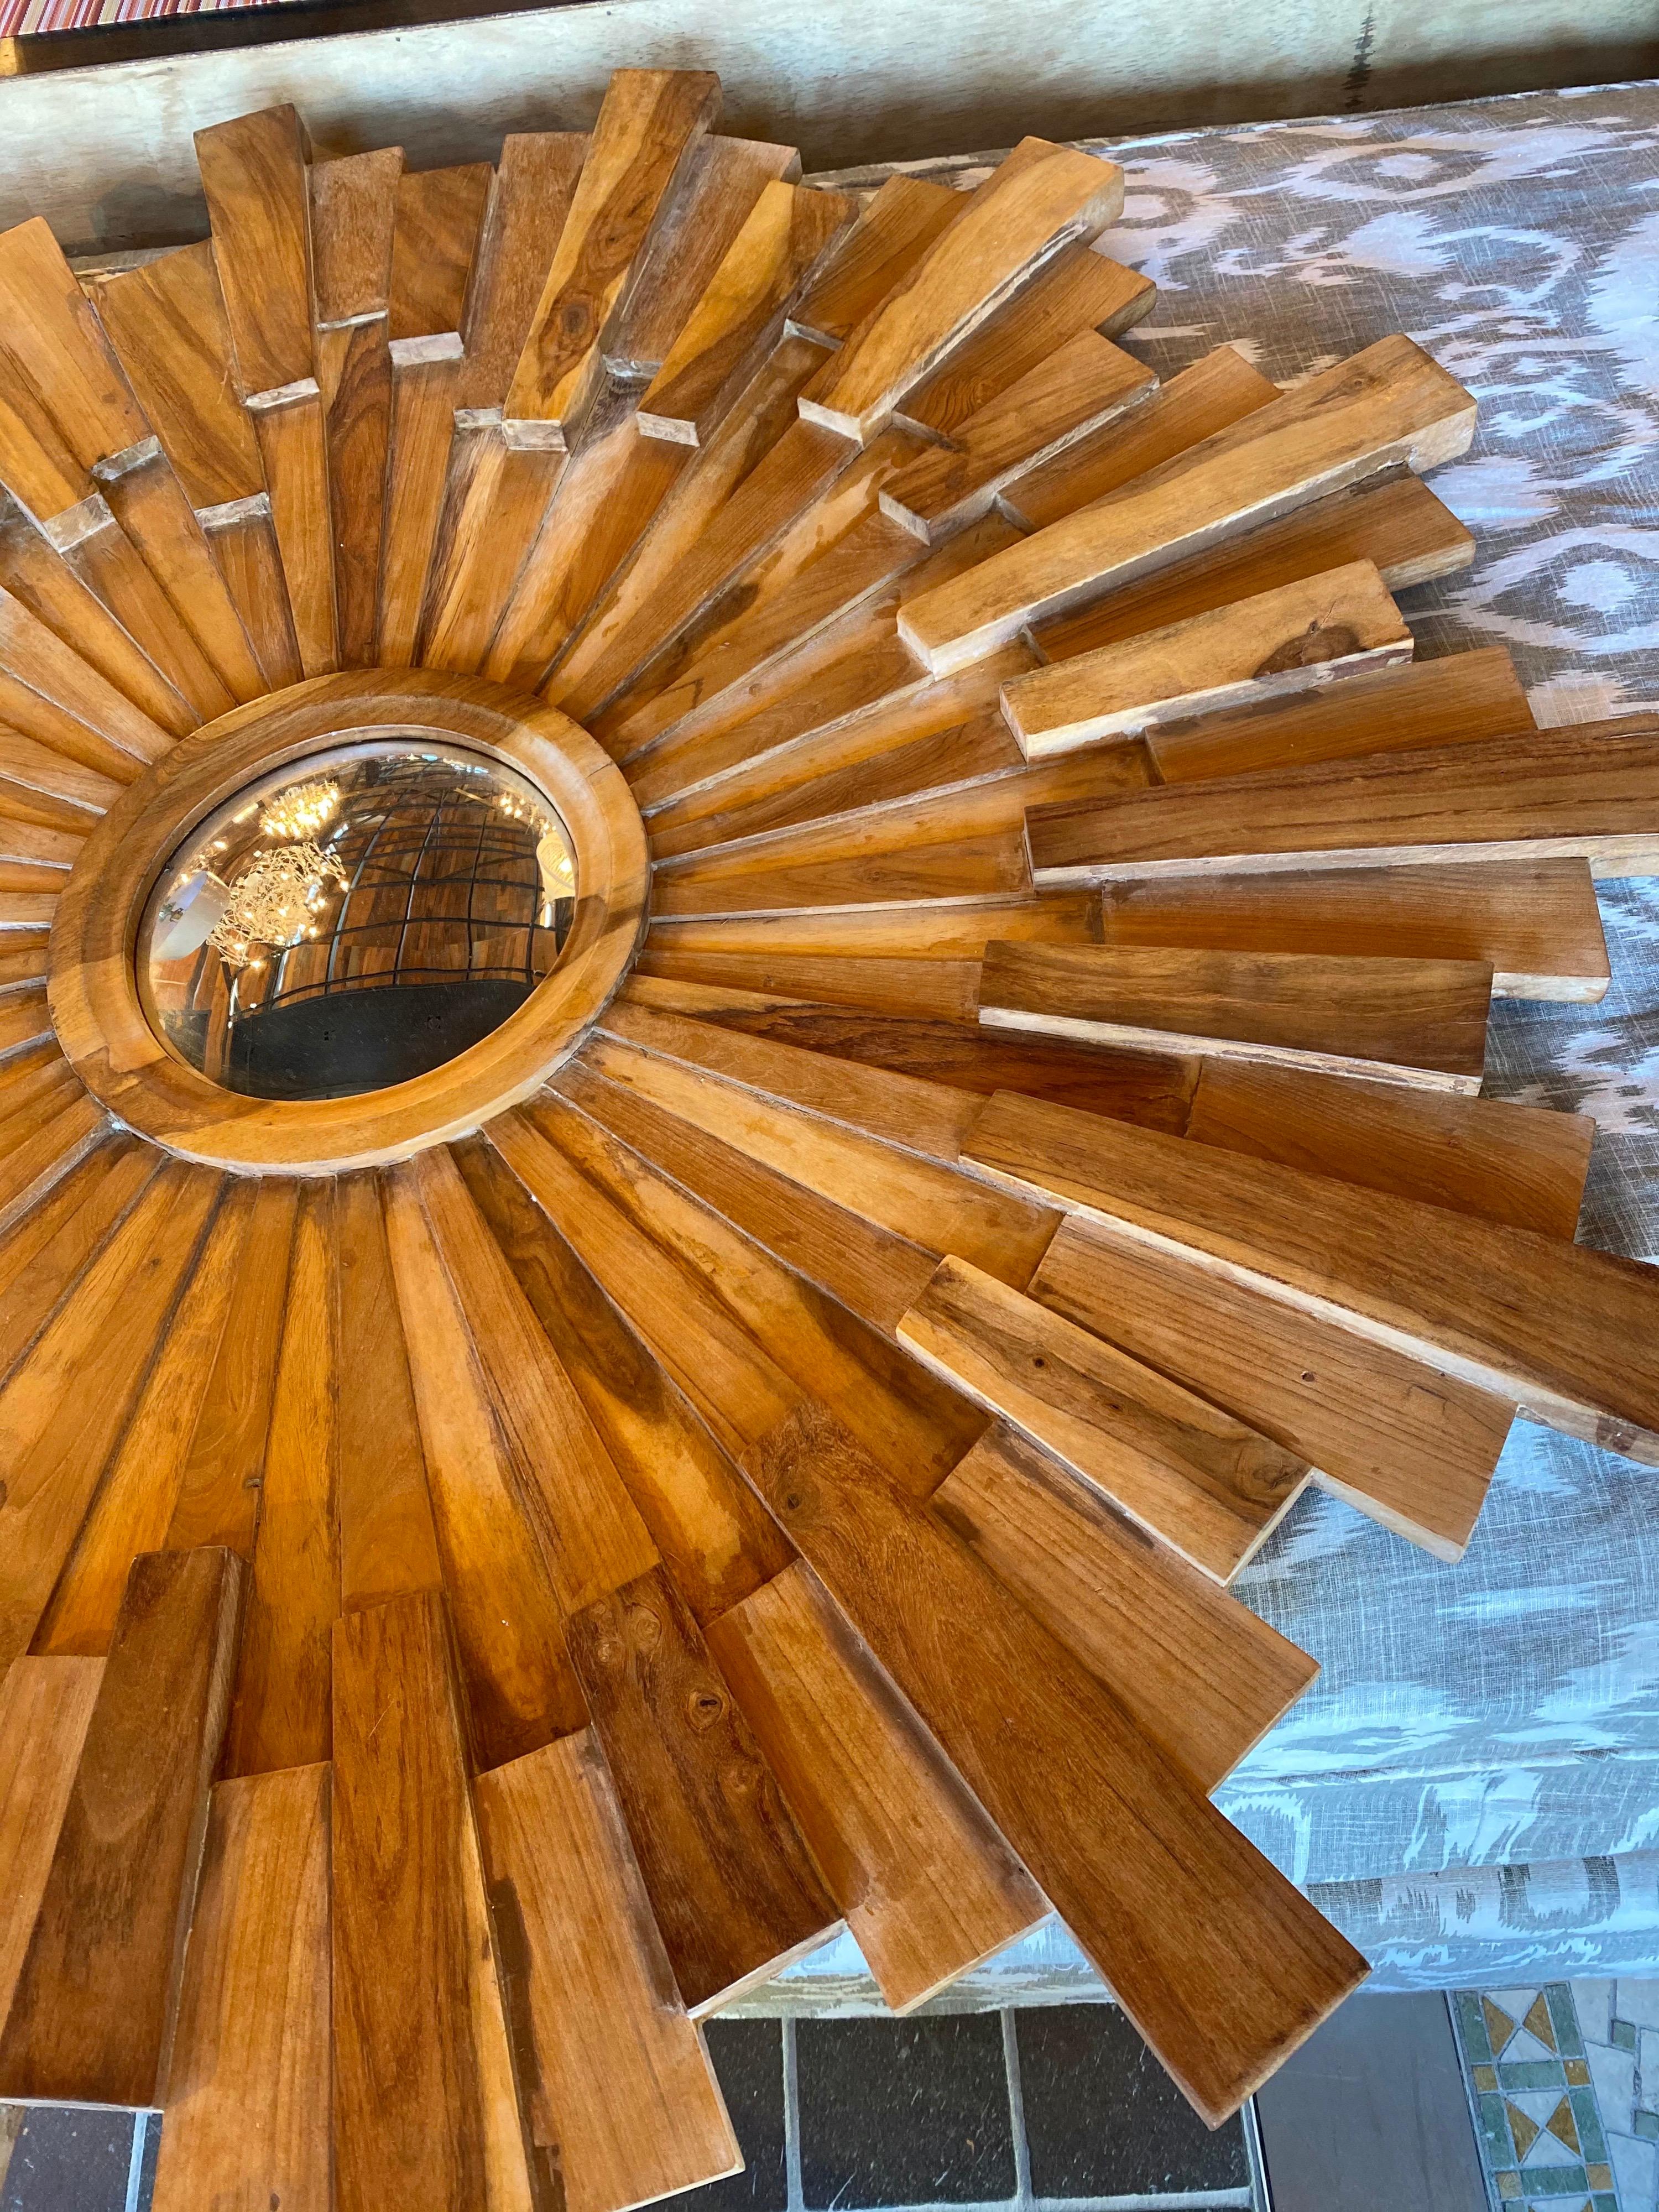 Large wooden starburst mirror

Measures: 47